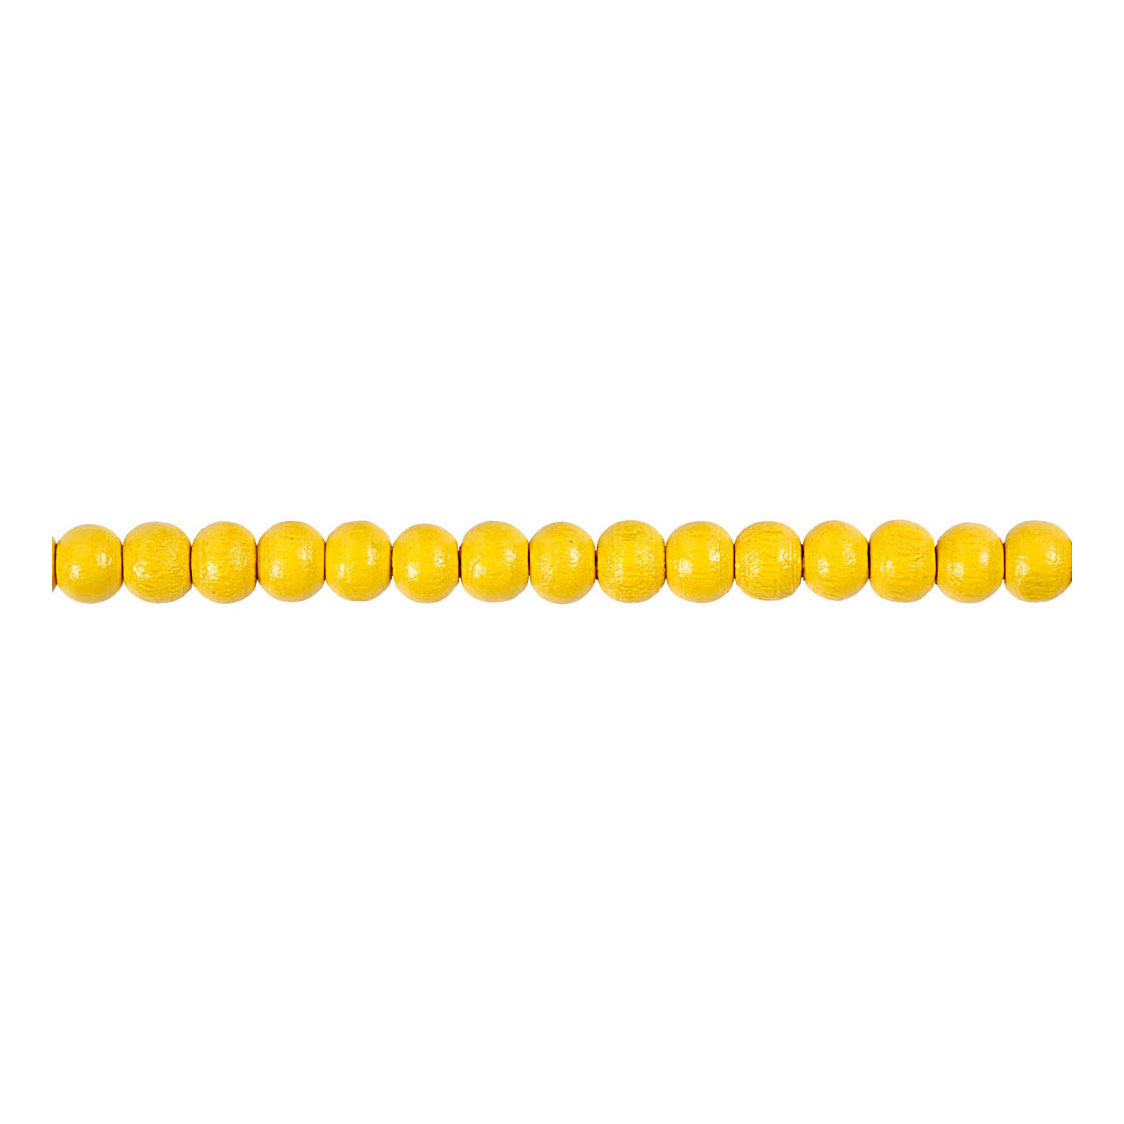 Perles en bois jaunes, 150 pièces.